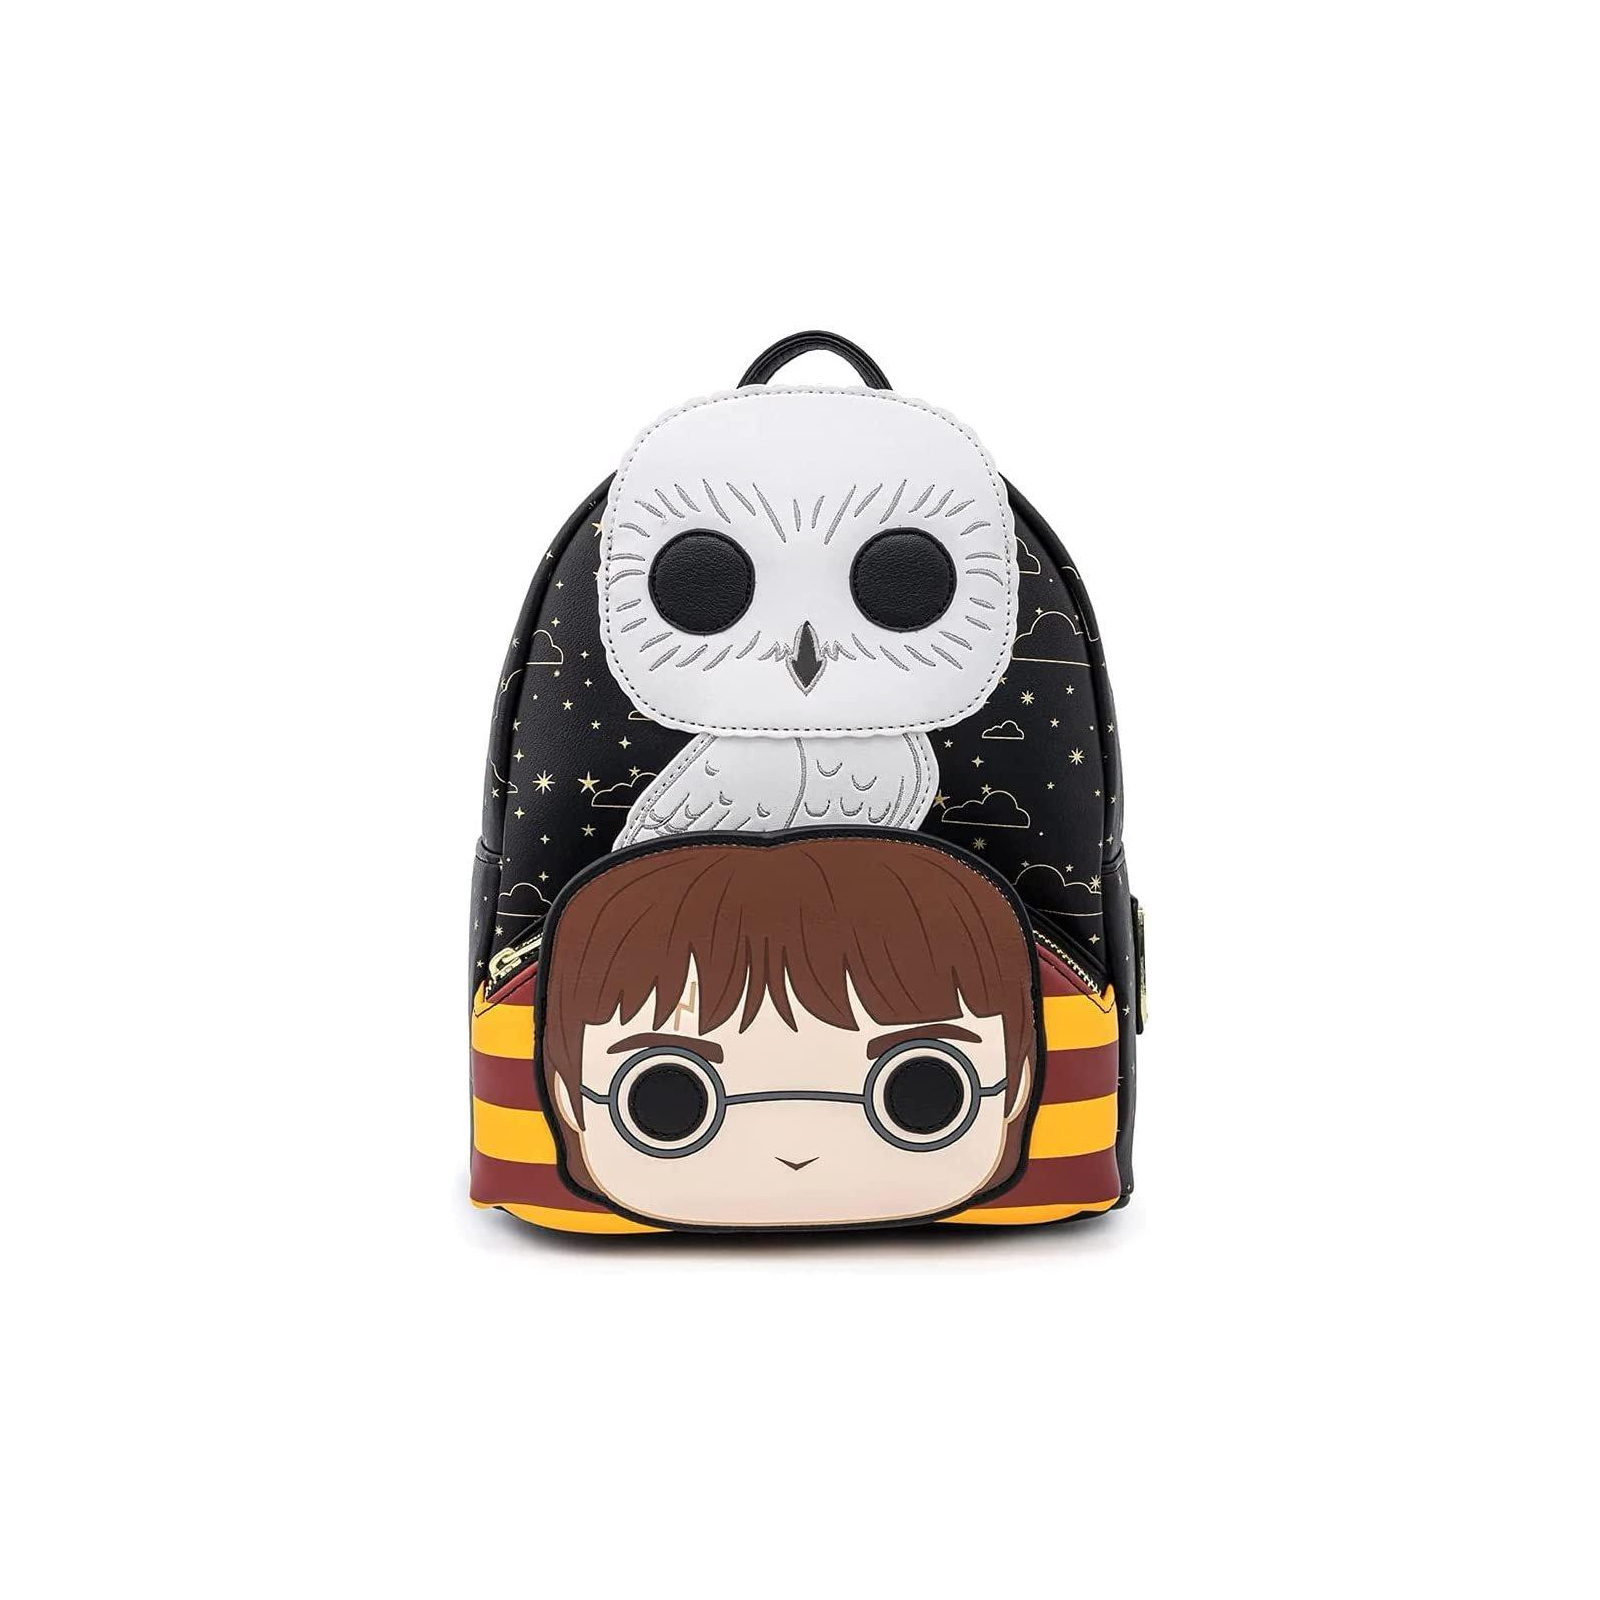 Рюкзак школьный Loungefly Harry Potter - Hedwig Cosplay Mini Backpack (HPBK0123) изображение 3